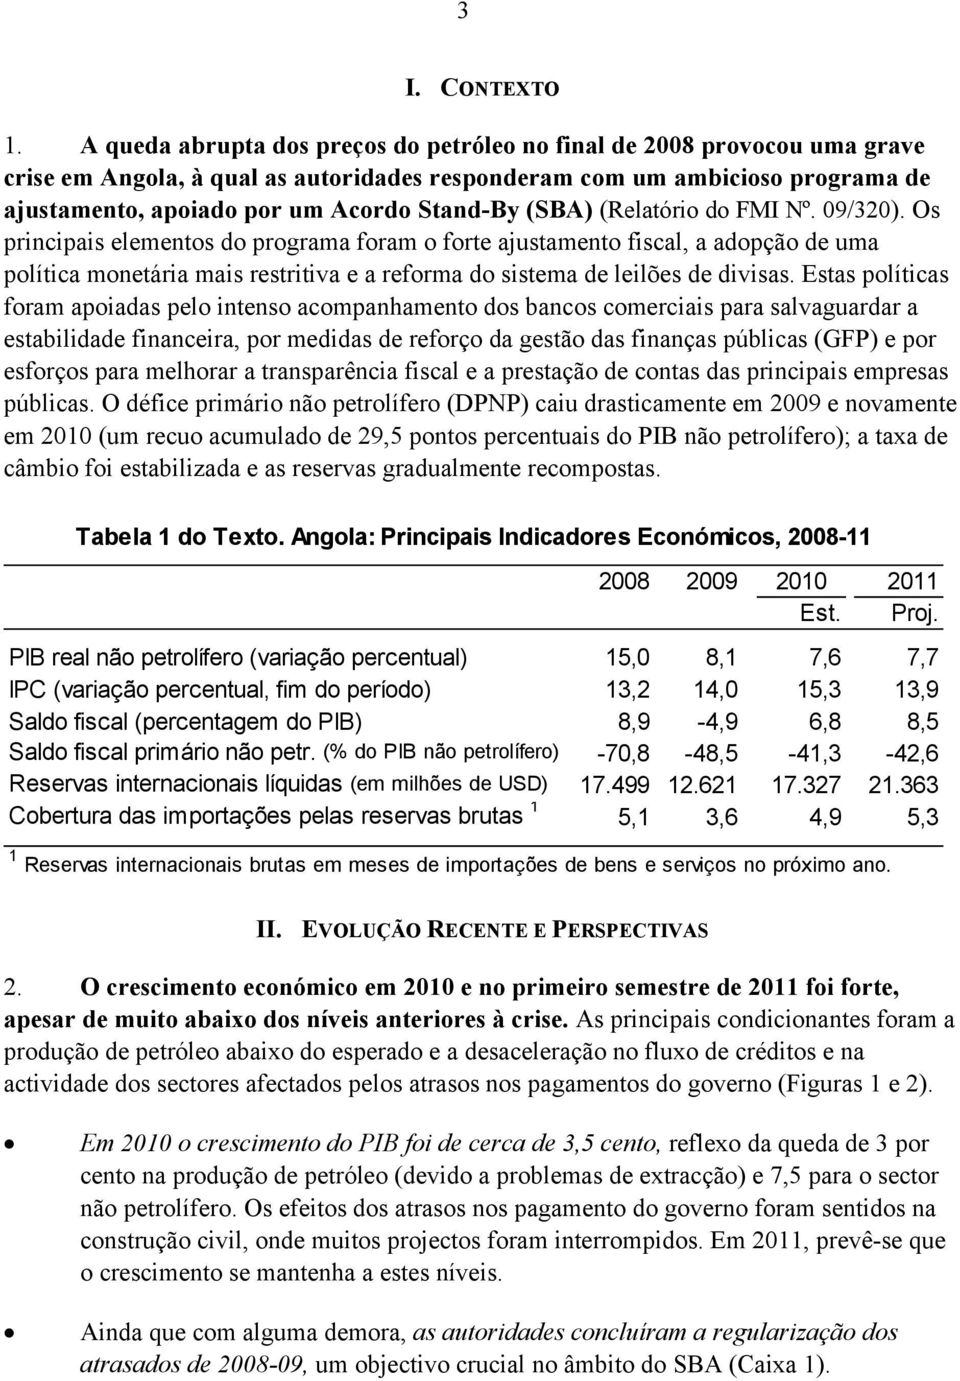 (SBA) (Relatório do FMI Nº. 09/320).